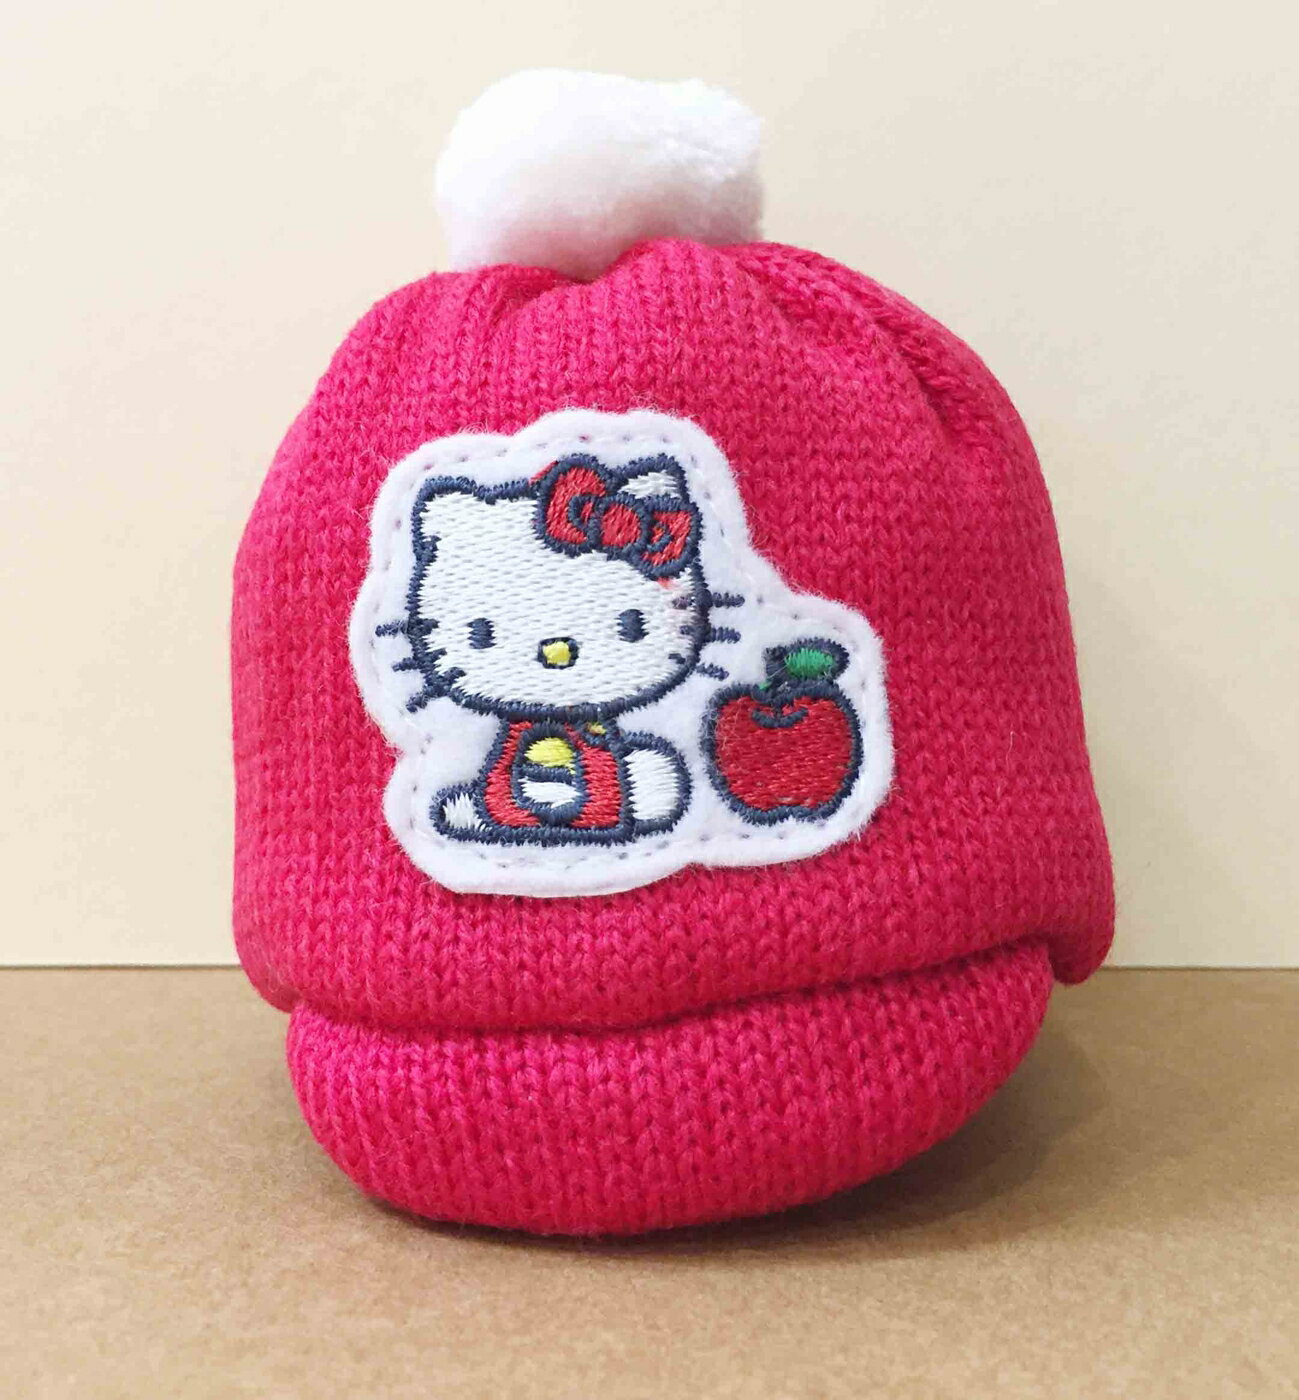 【震撼精品百貨】Hello Kitty 凱蒂貓-零錢包-KITTY帽子造型-紅色 震撼日式精品百貨